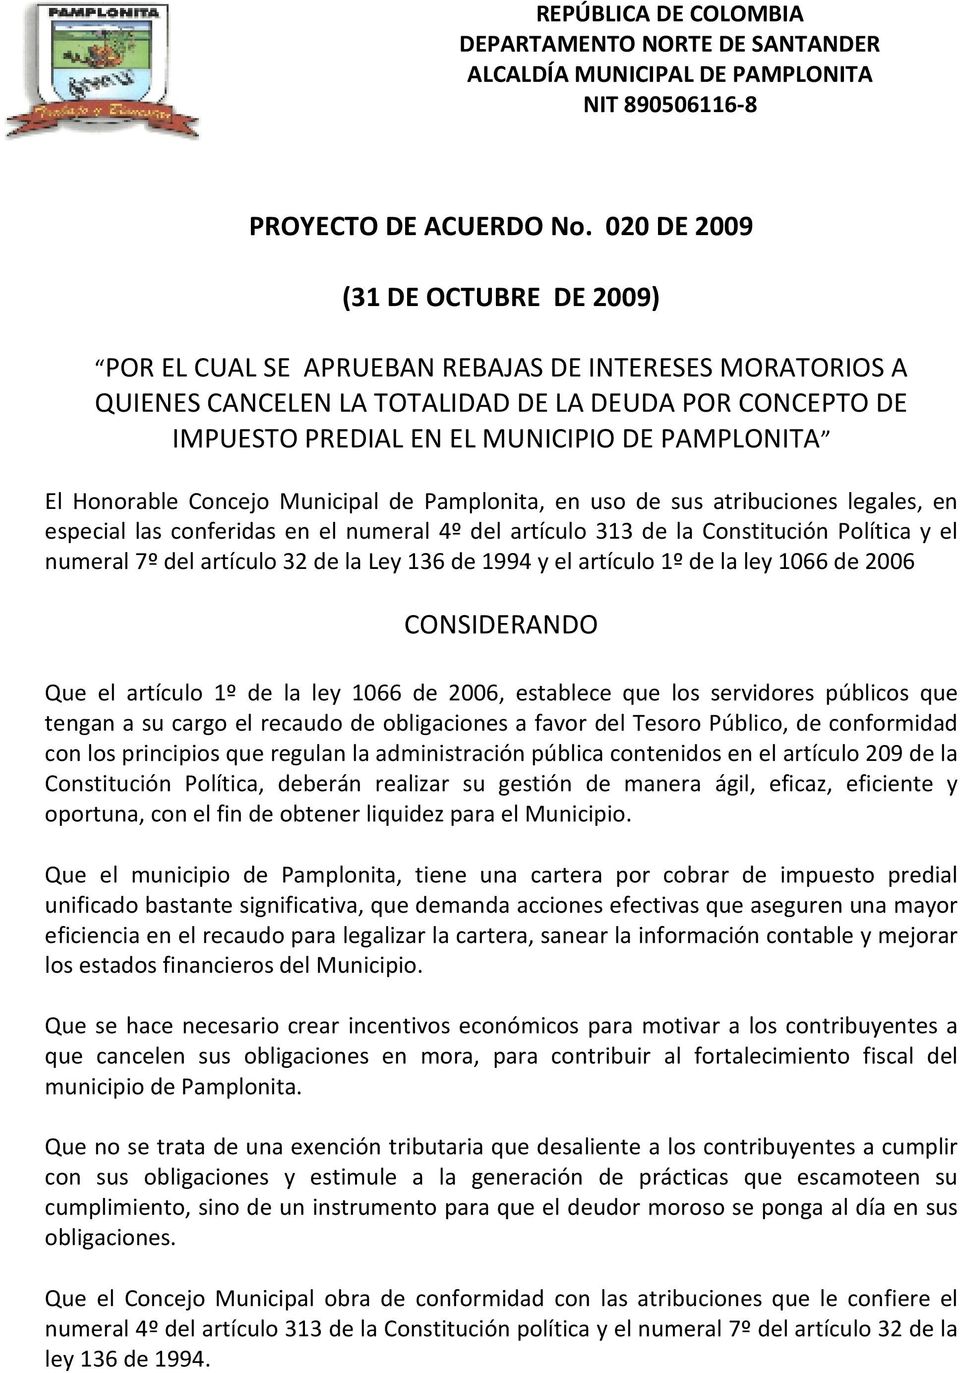 El Honorable Concejo Municipal de Pamplonita, en uso de sus atribuciones legales, en especial las conferidas en el numeral 4º del artículo 313 de la Constitución Política y el numeral 7º del artículo